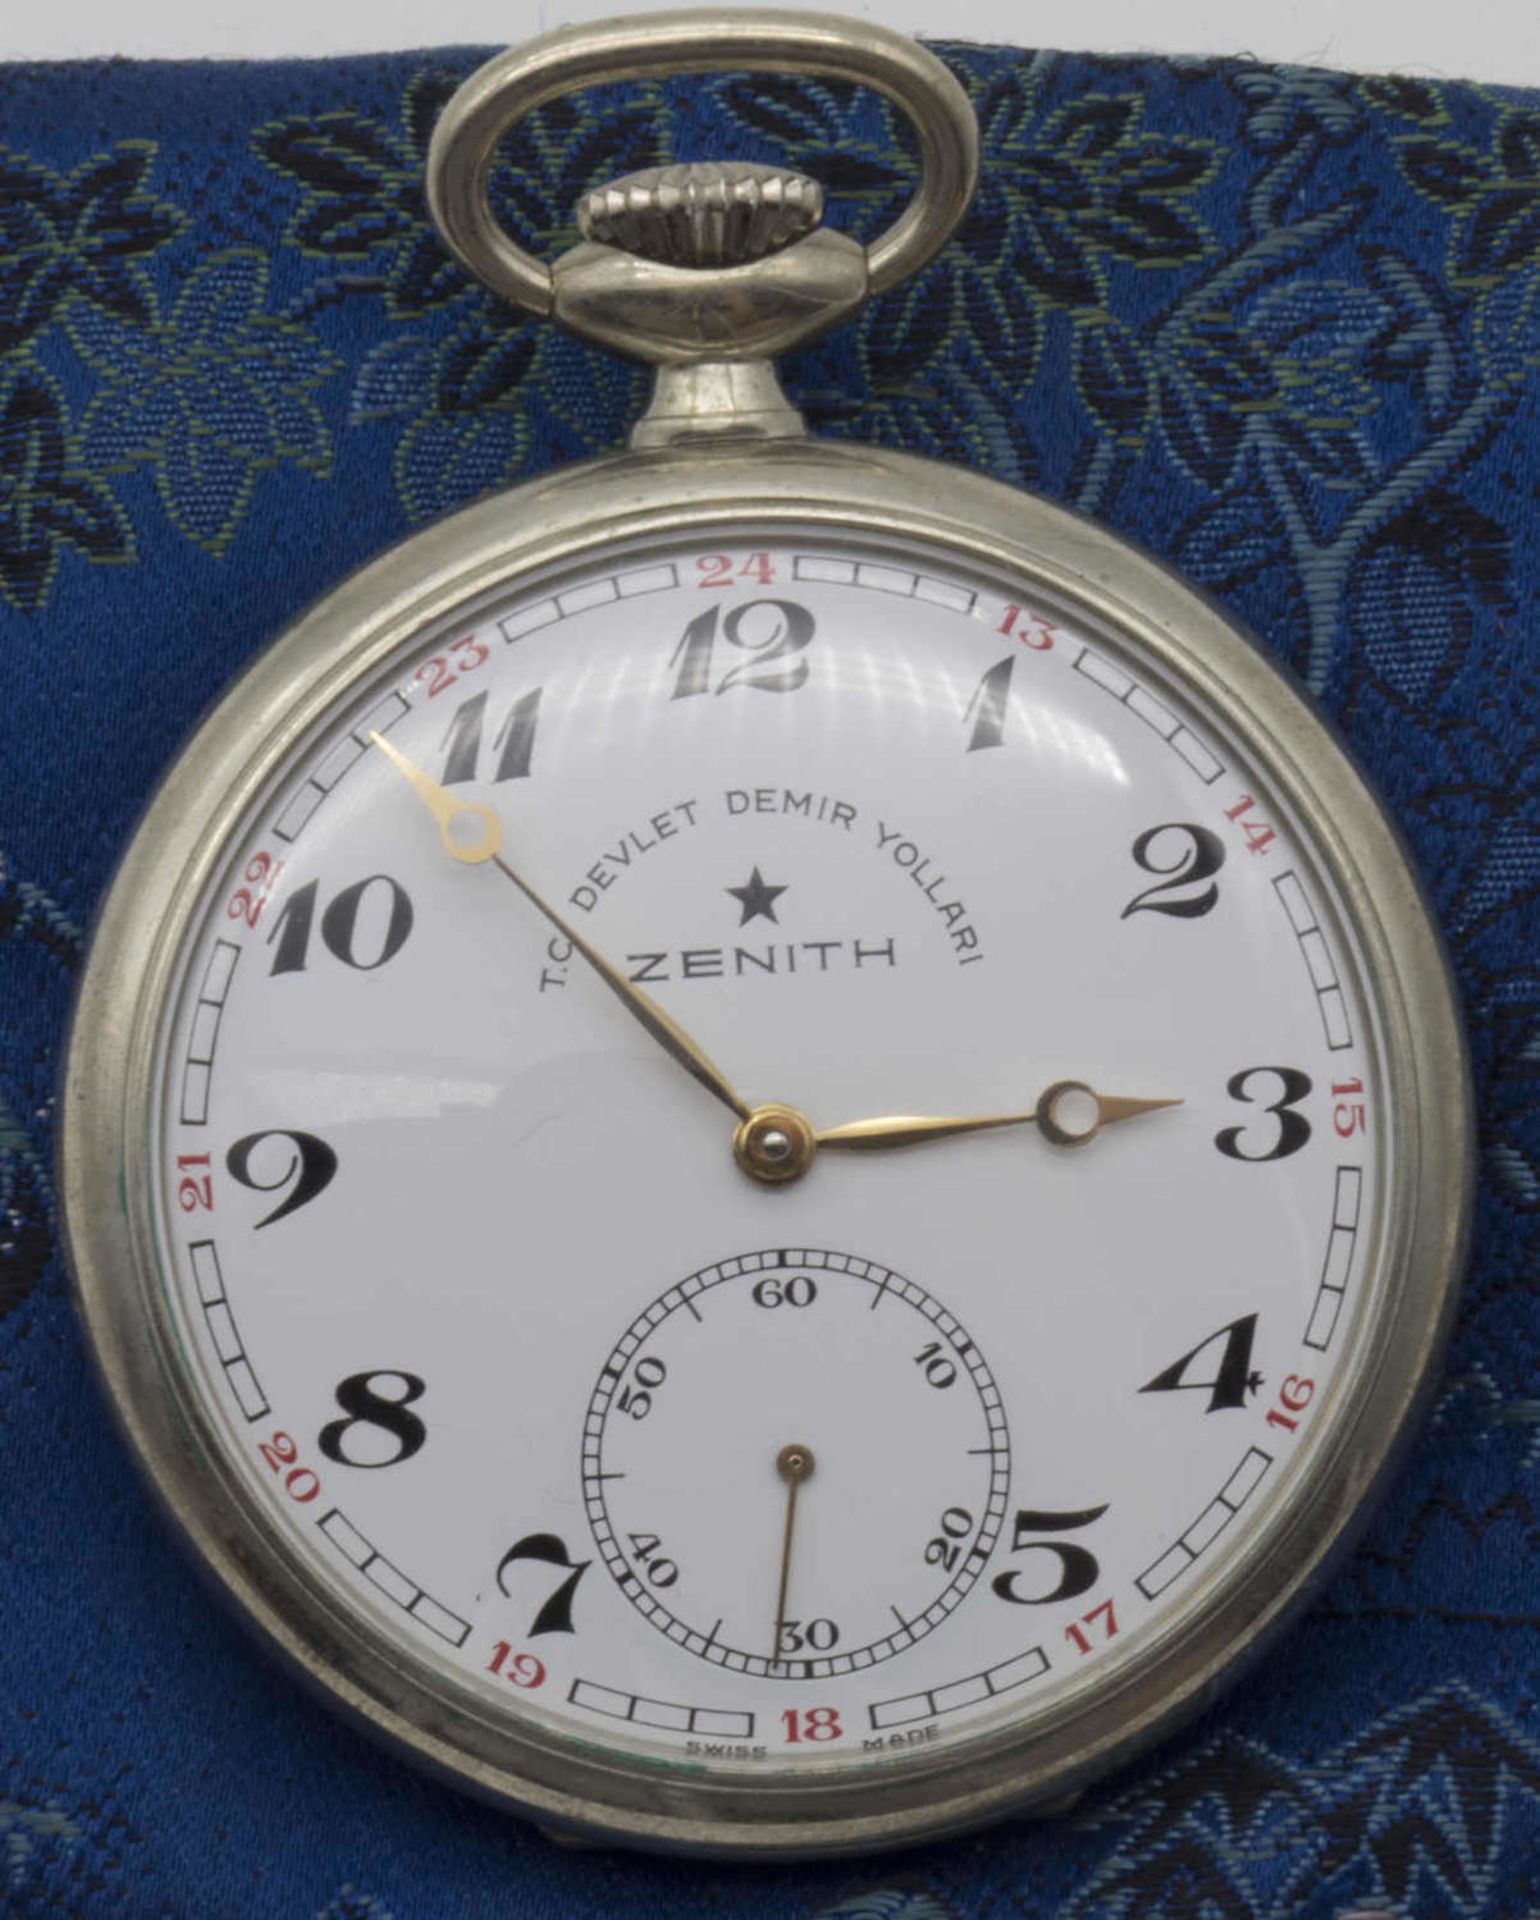 Zenith Türkische Eisenbahner Taschenuhr. Die Uhr läuft an.Zenith Turkish Railwayman pocket watch. - Image 2 of 2